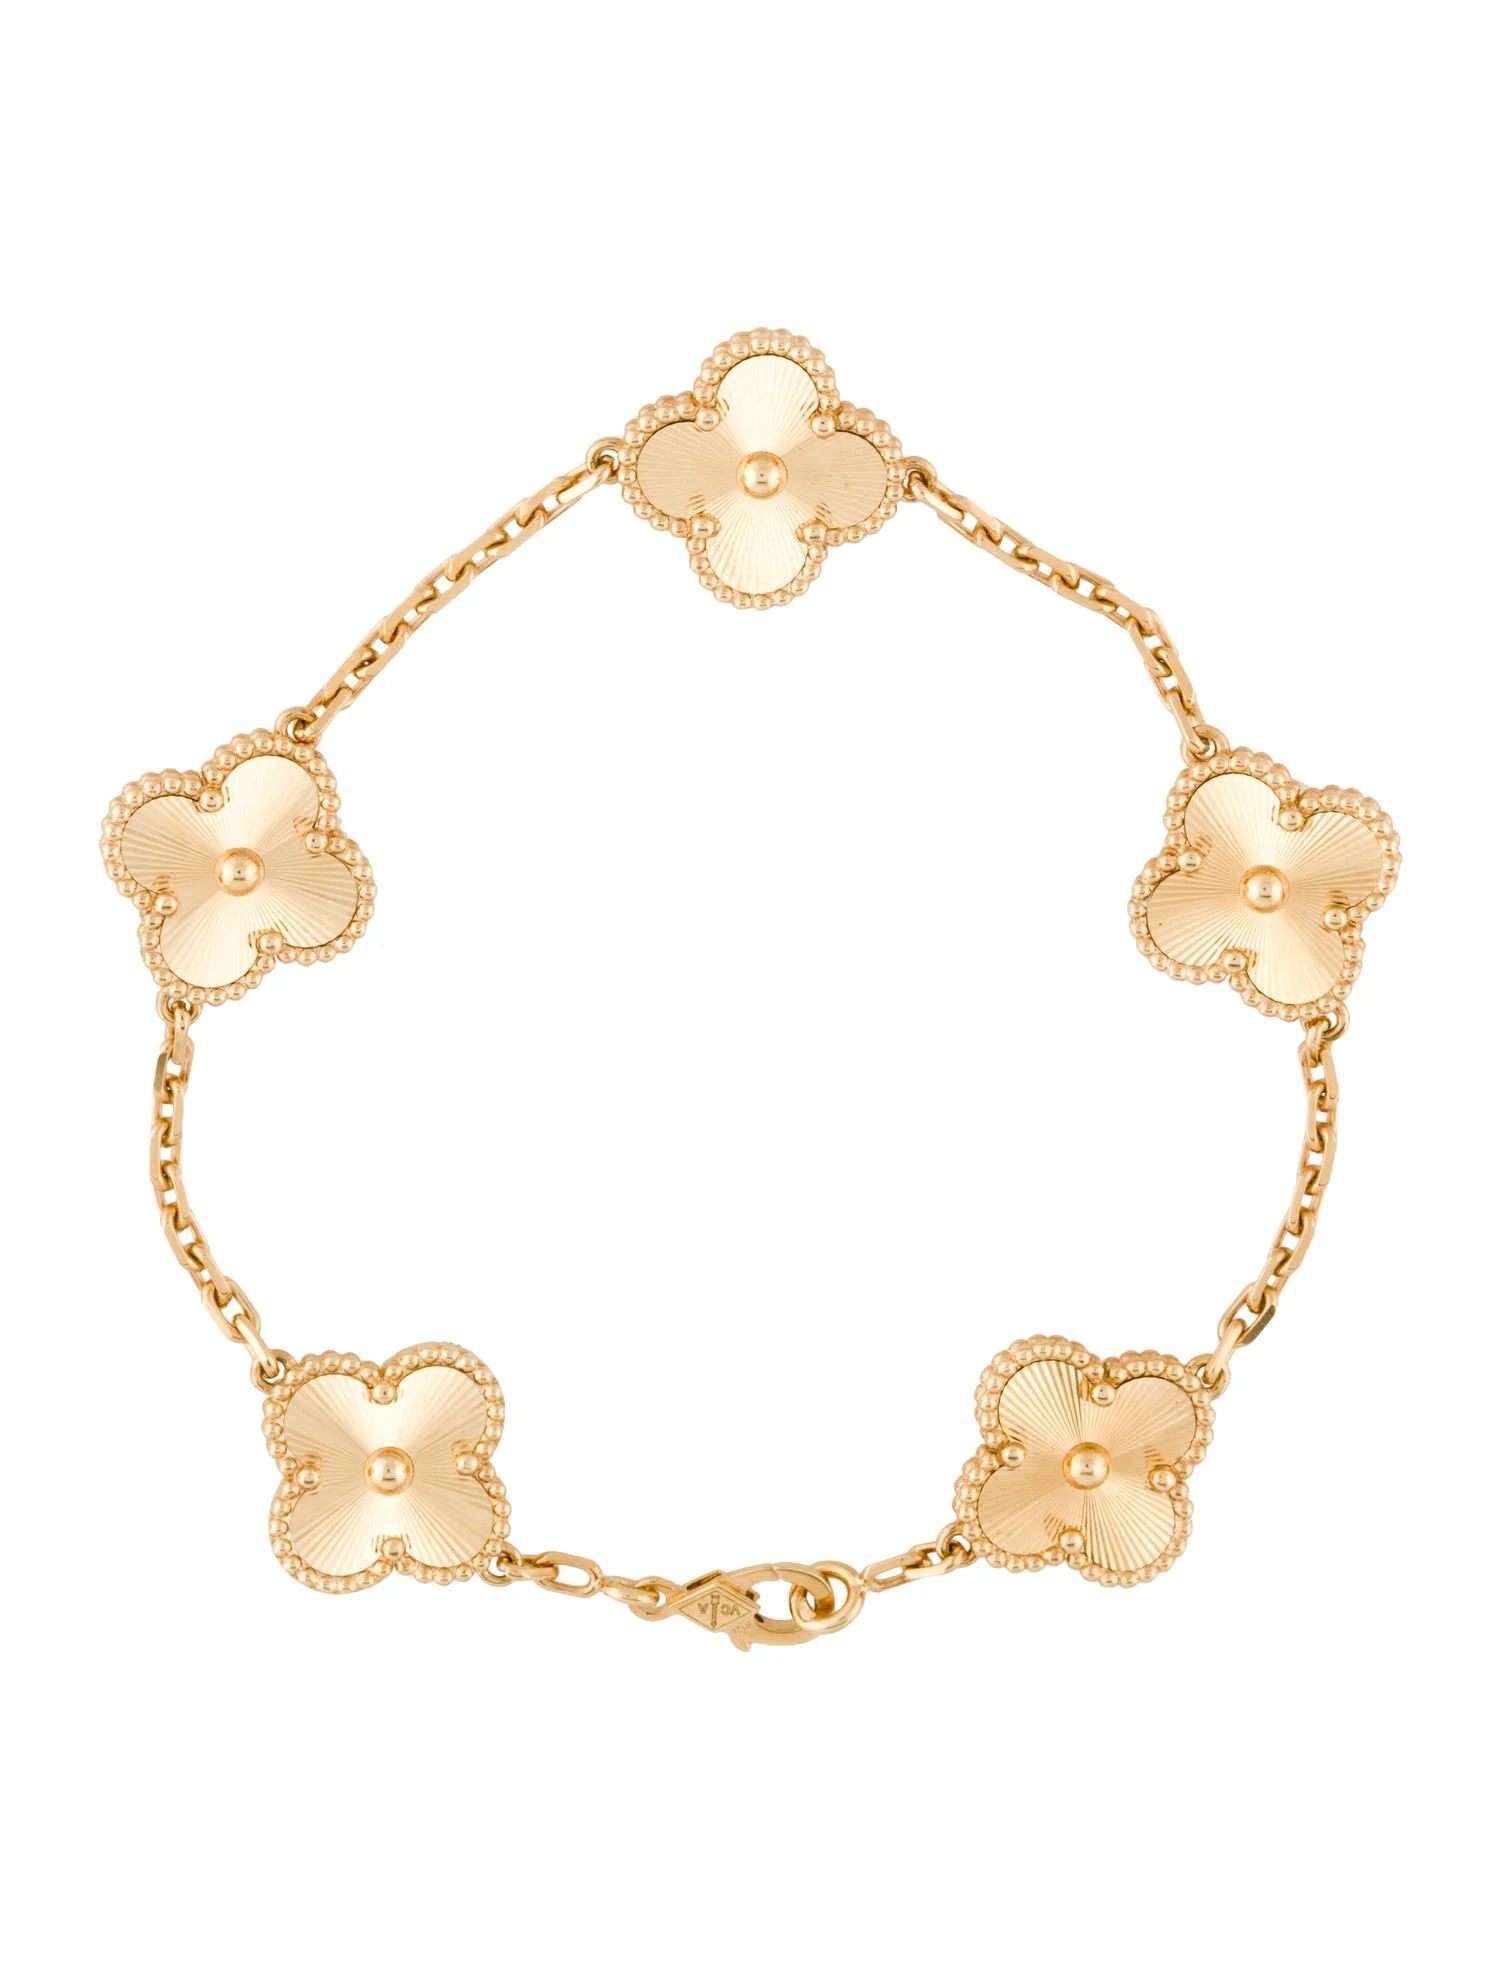 5 Motif Vintage Alhambra Bracelet | The RealReal